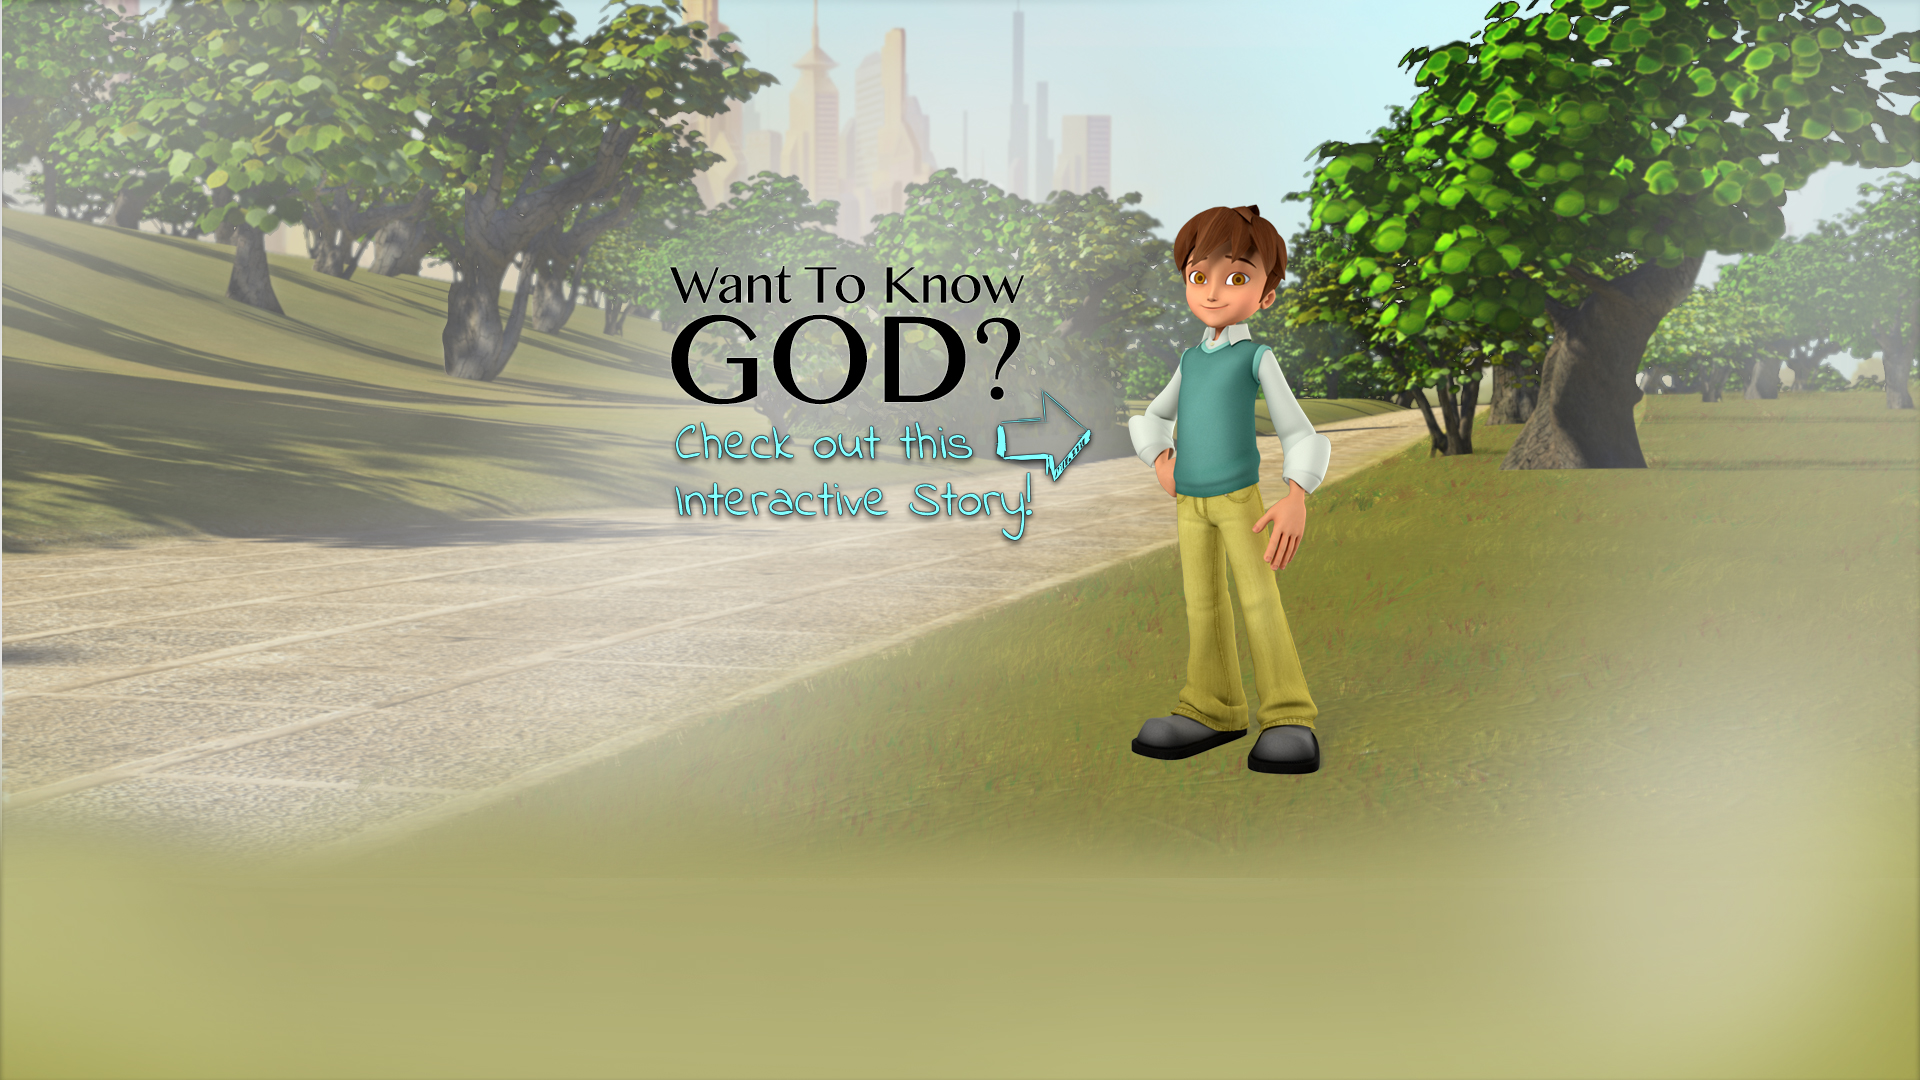 Site Superbook Kids - Games On-line Gratuitos - Jogos de Internet para  Crianças Baseados na Bíblia